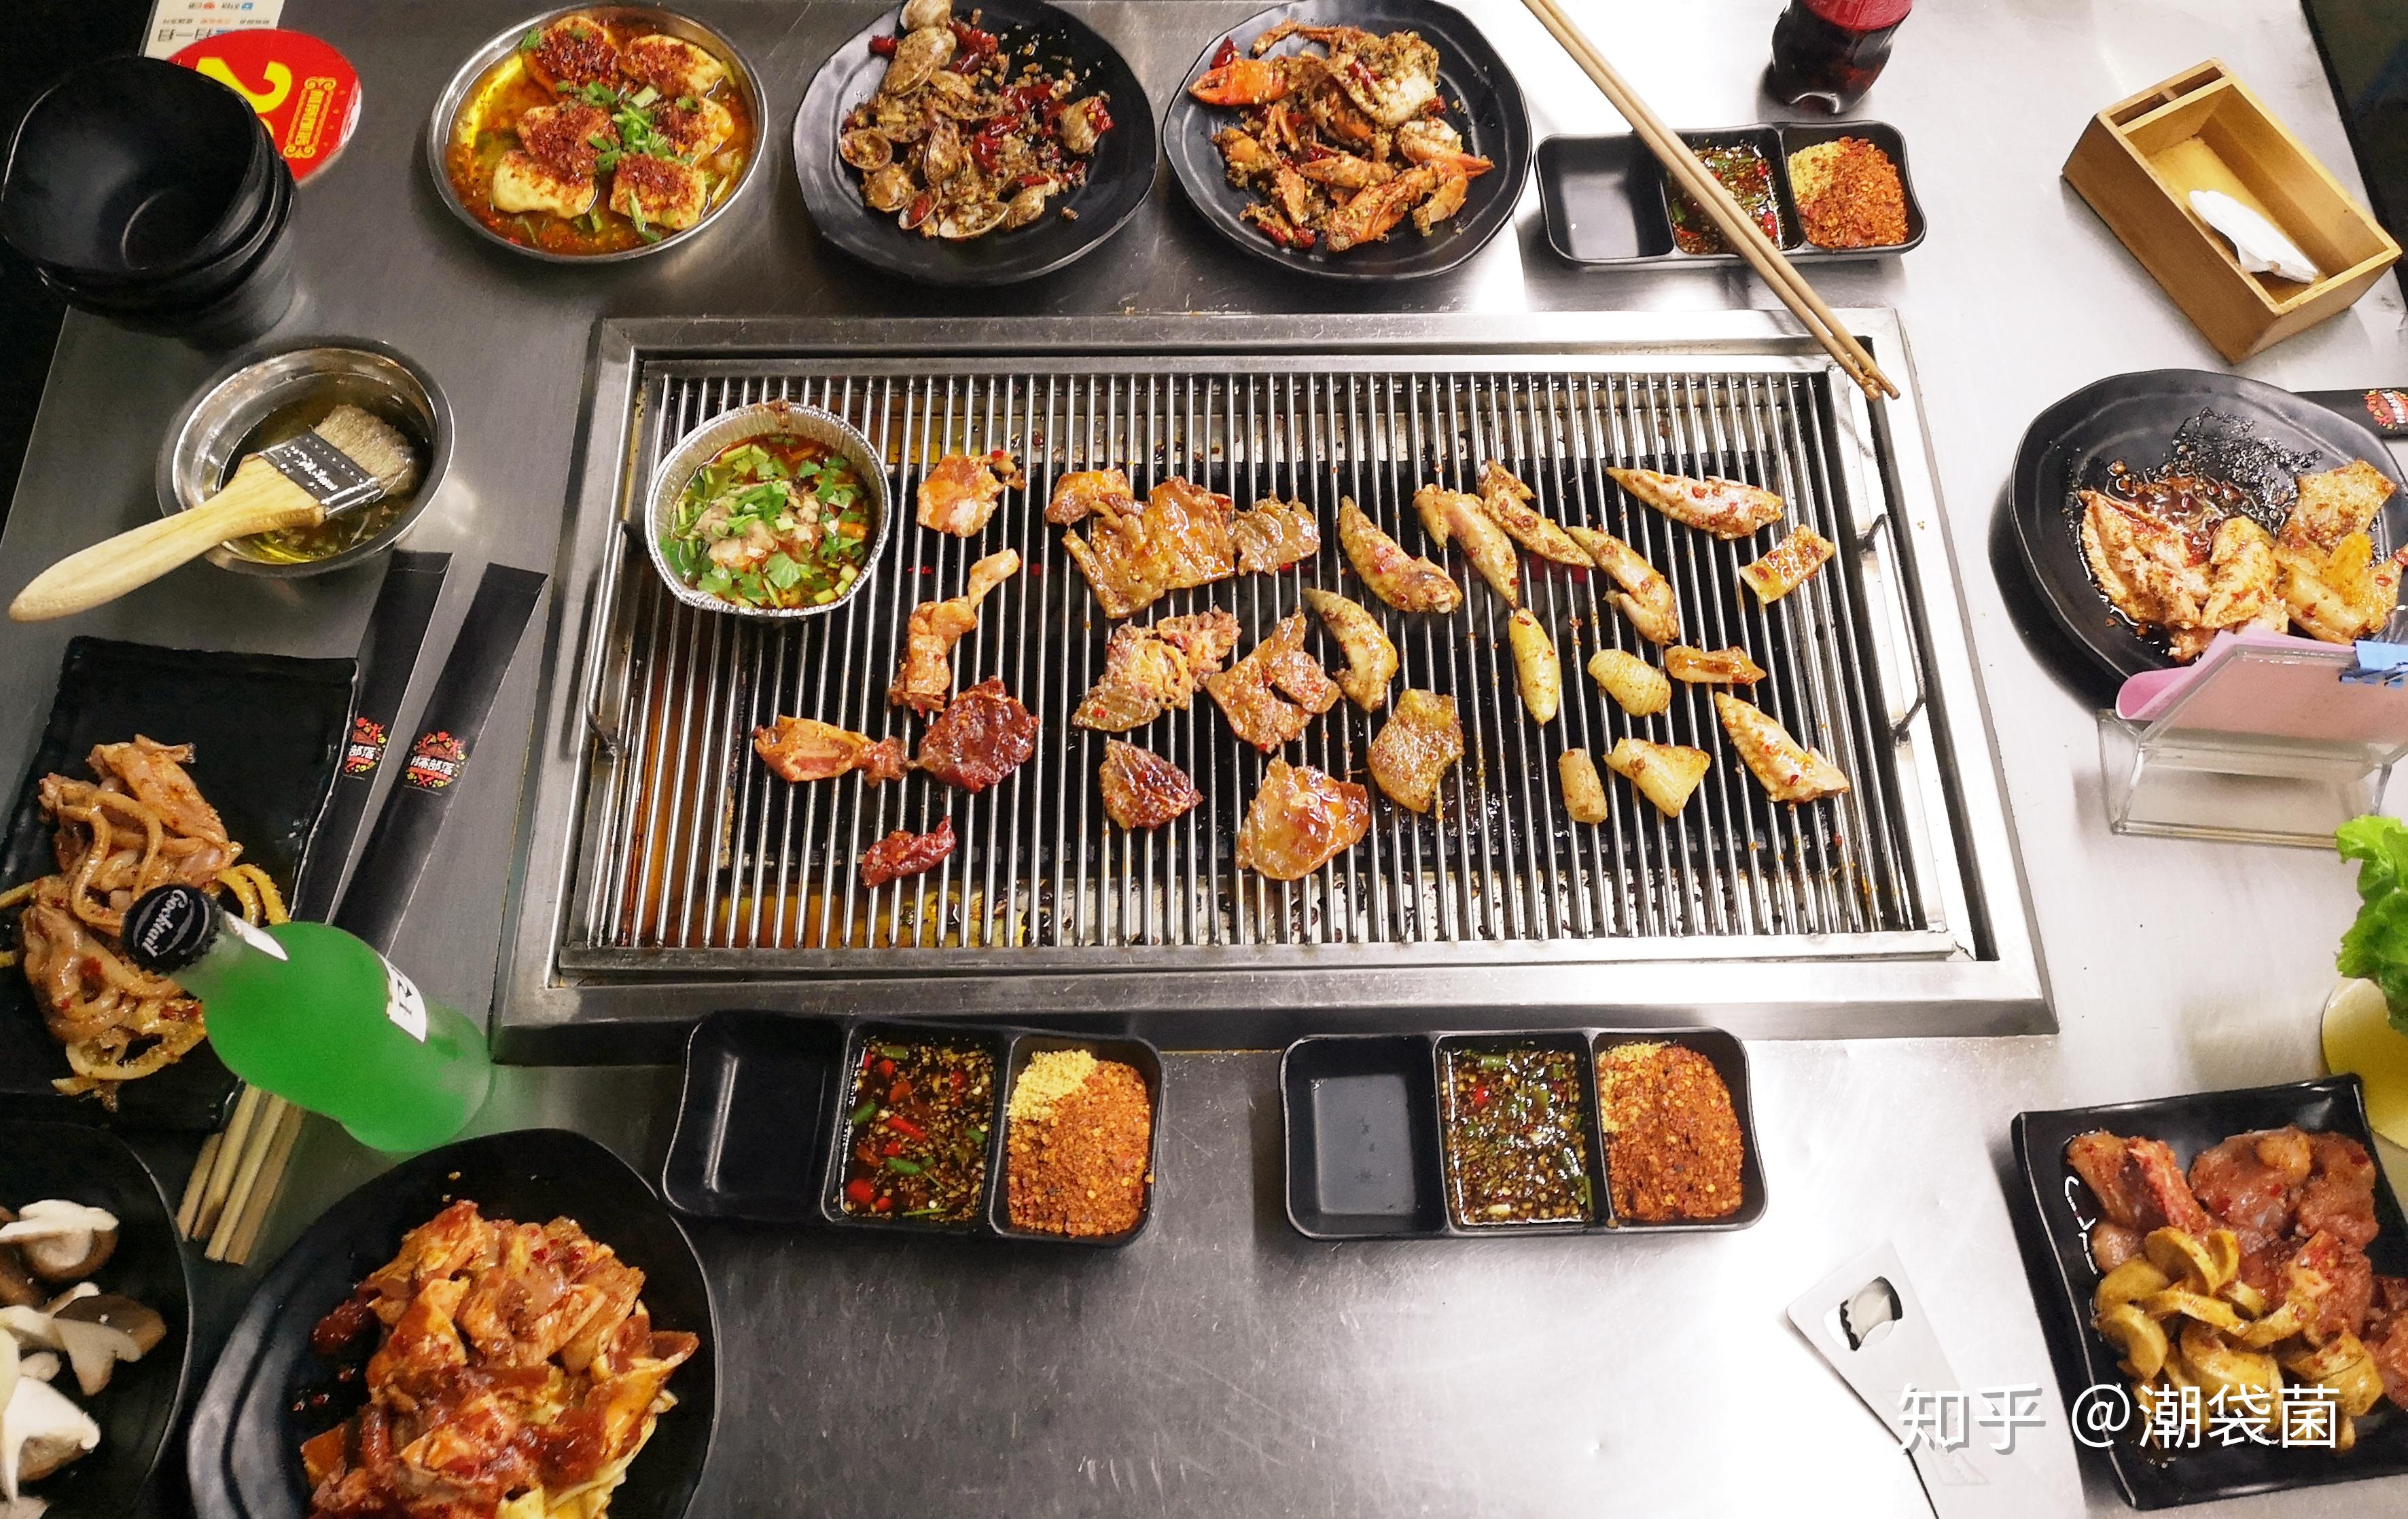 在家吃韩国烤肉 - 在家吃韩国烤肉做法、功效、食材 - 网上厨房